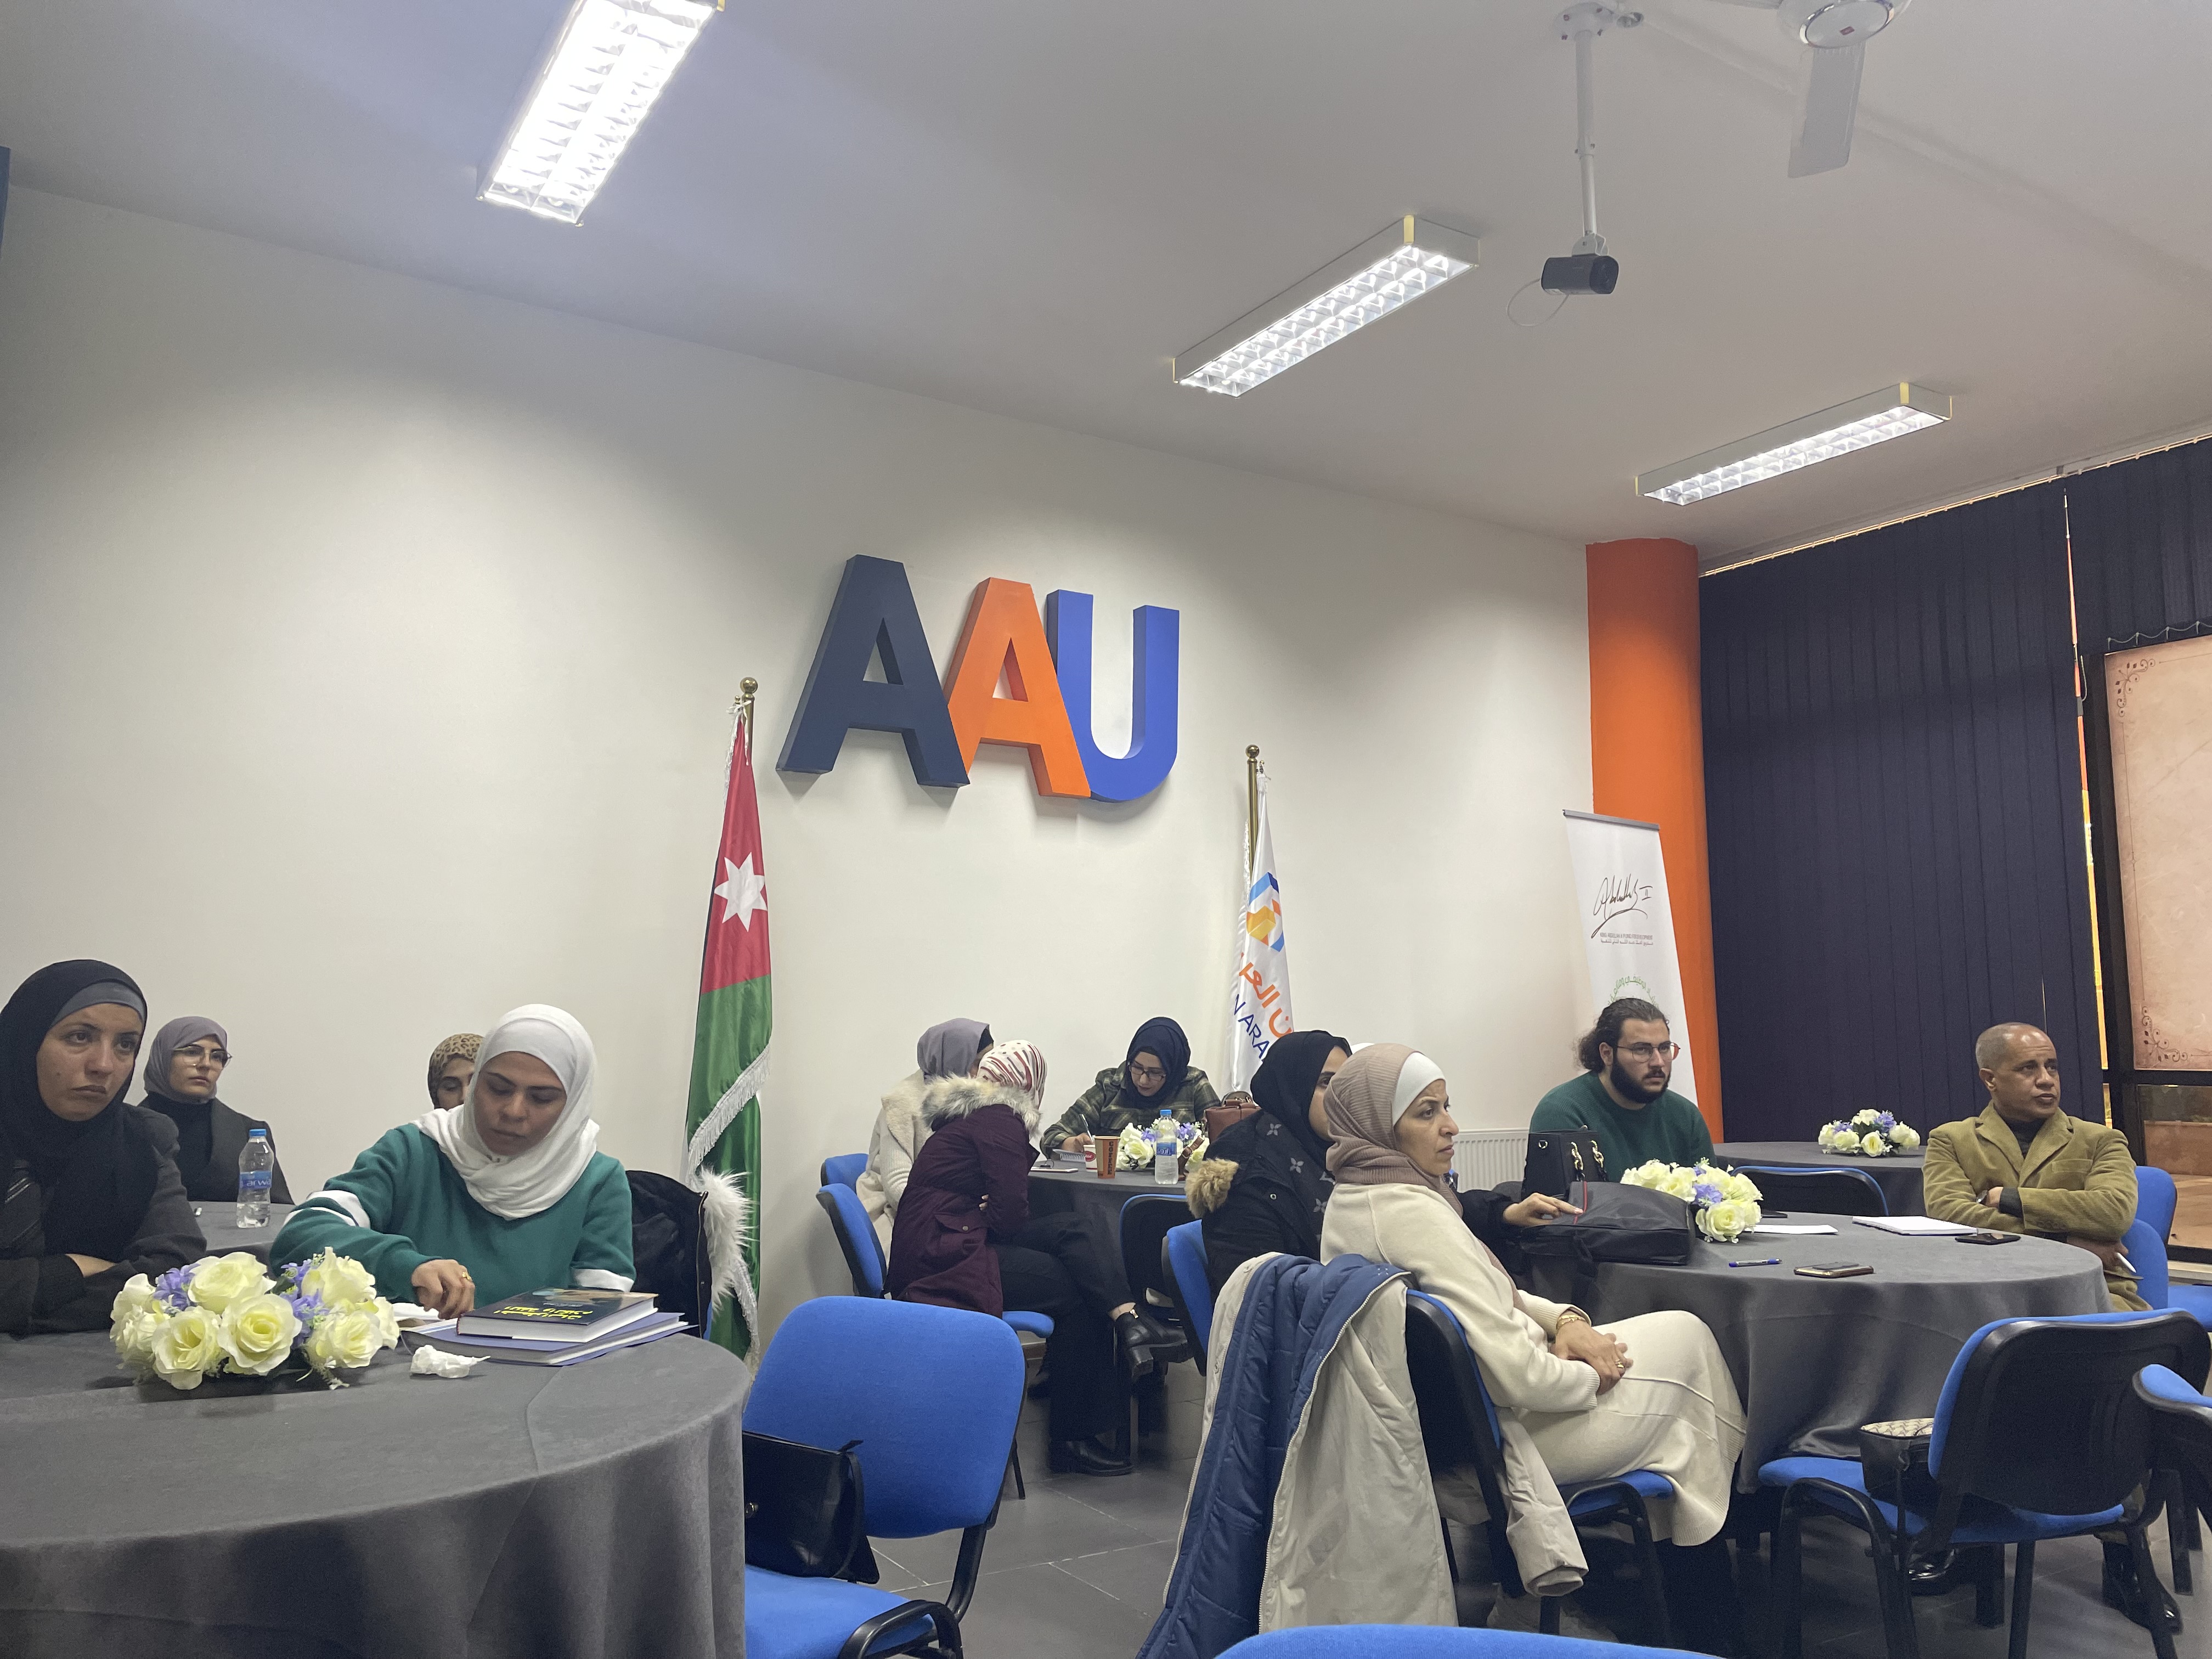 ورشة "مقاييس واختبارات الذكاء" لطلبة جامعة عمان العربية1